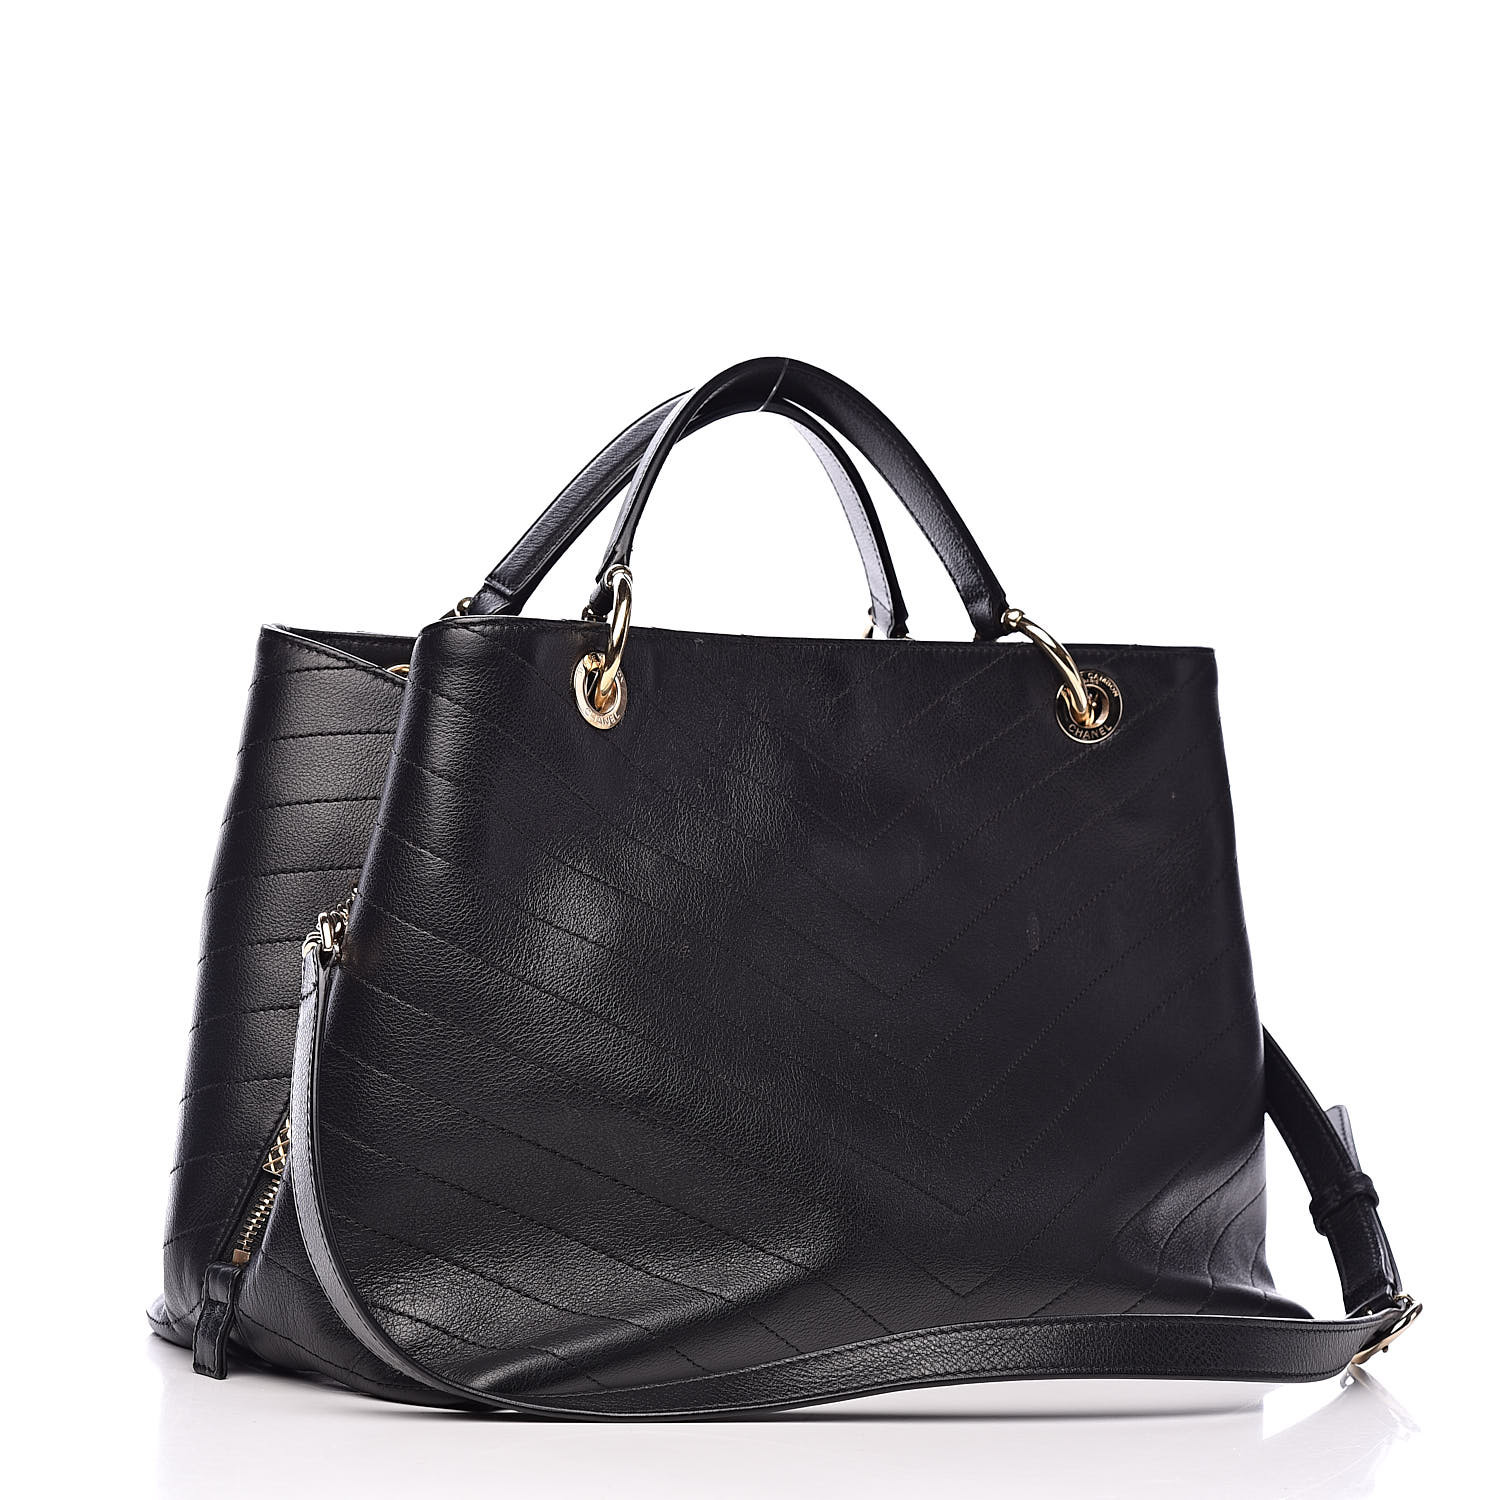 CHANEL Calfskin Elaphe Stitched Large Chevron Chic Shopping Bag Black ...